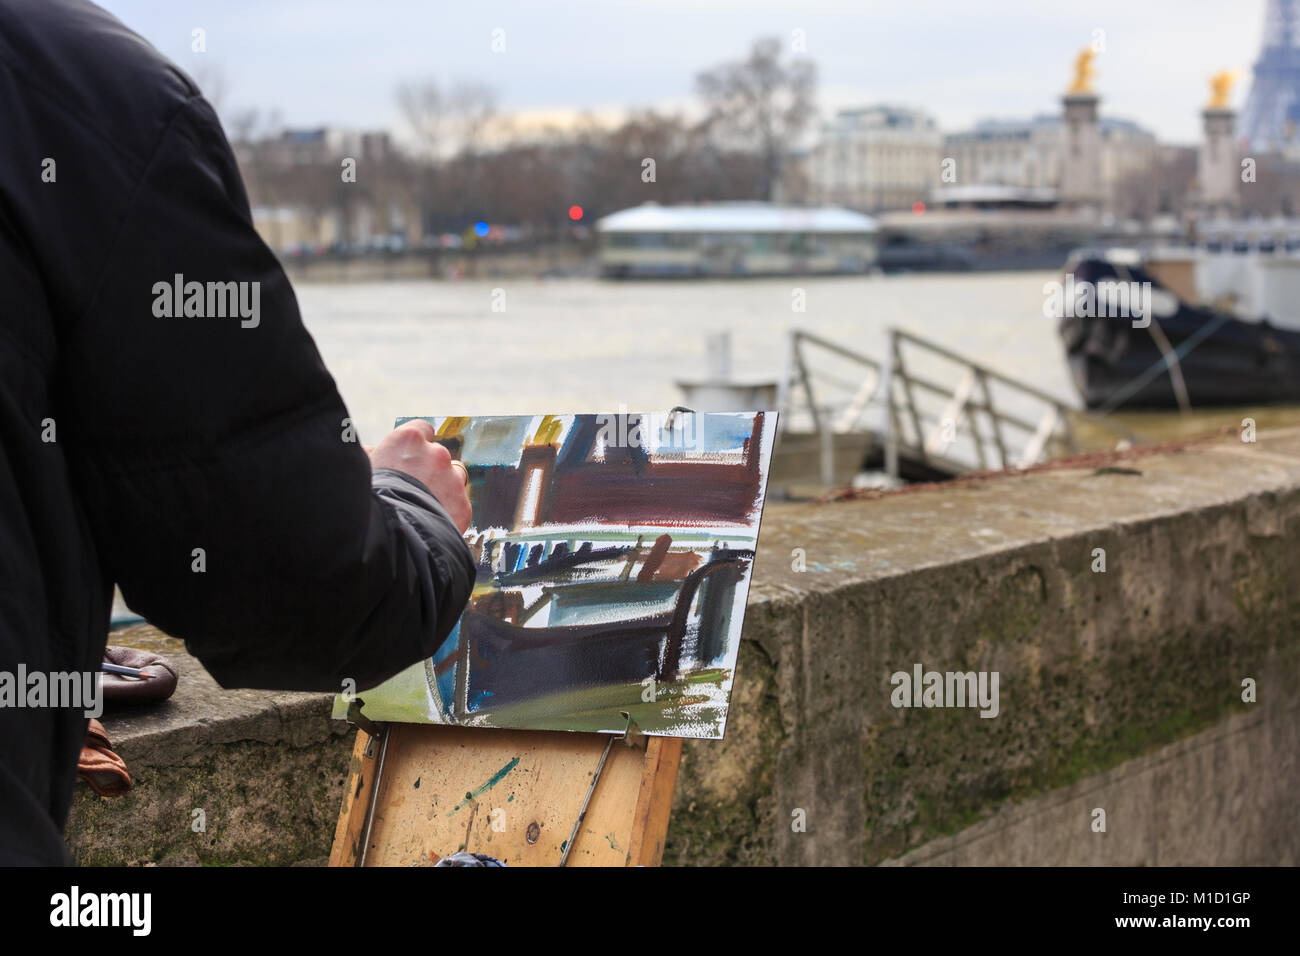 Un artiste peint une peinture à l'huile de la Seine à Paris son whilsts les niveaux d'eau sont élevés pendant les inondations, Paris, France Banque D'Images